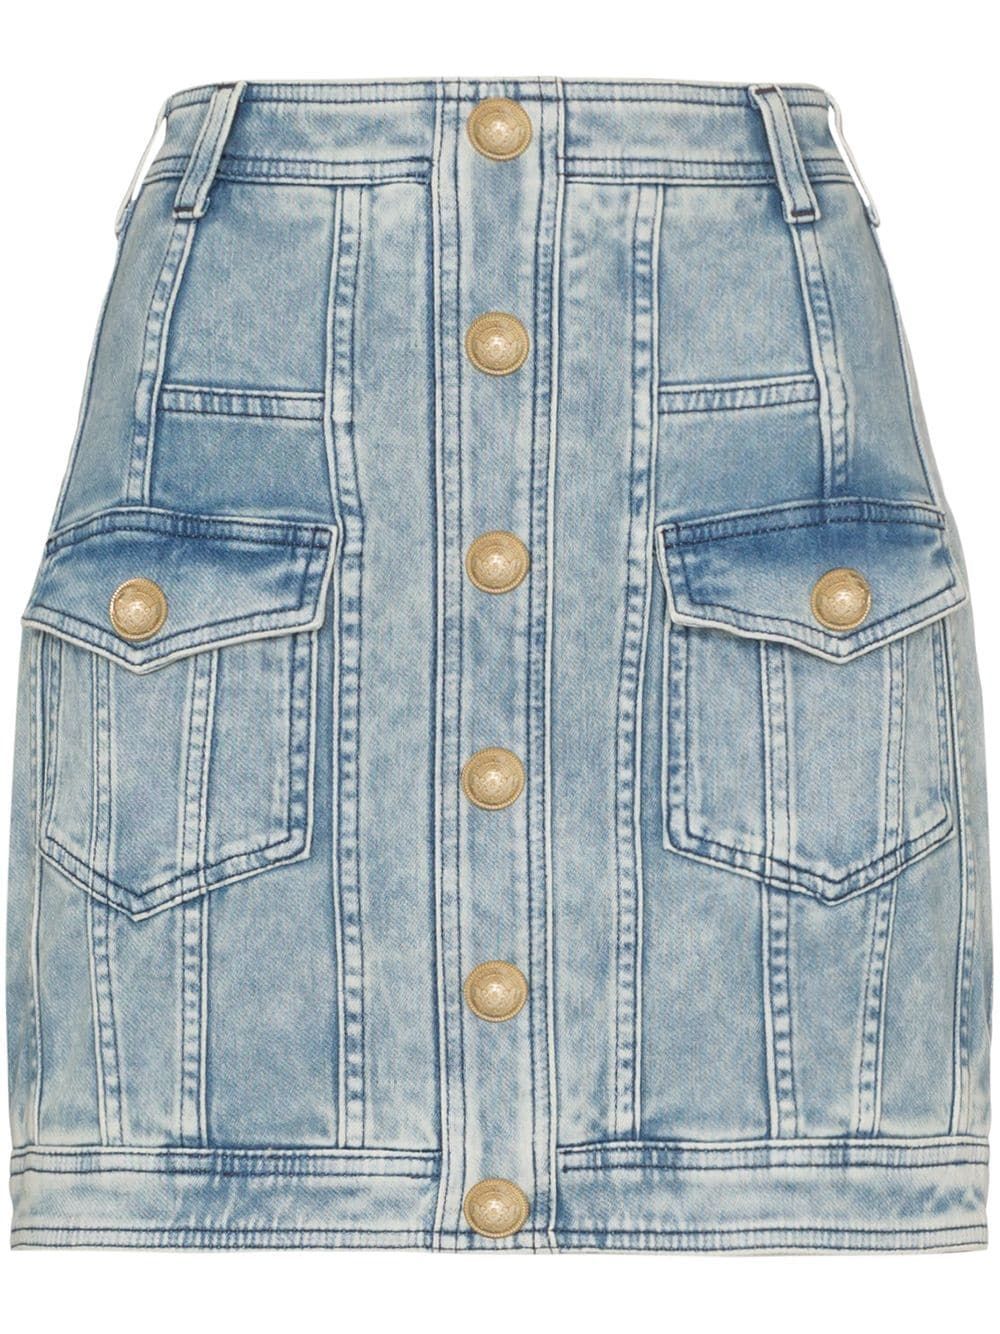 Balmain Buttoned Denim Mini Skirt - Farfetch -   13 dress Mini denim jackets ideas